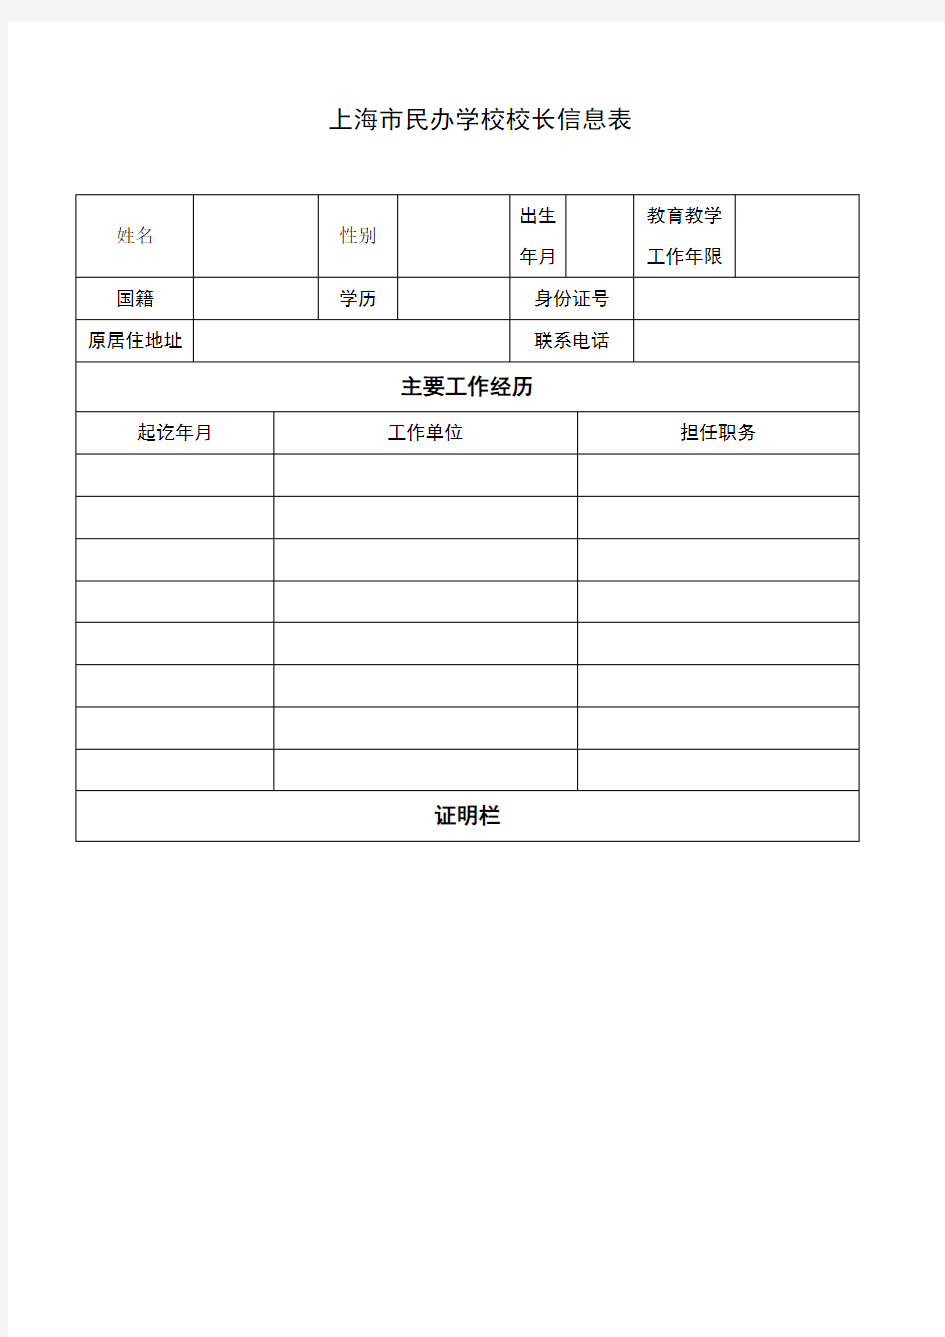 上海市民办学校校长信息表